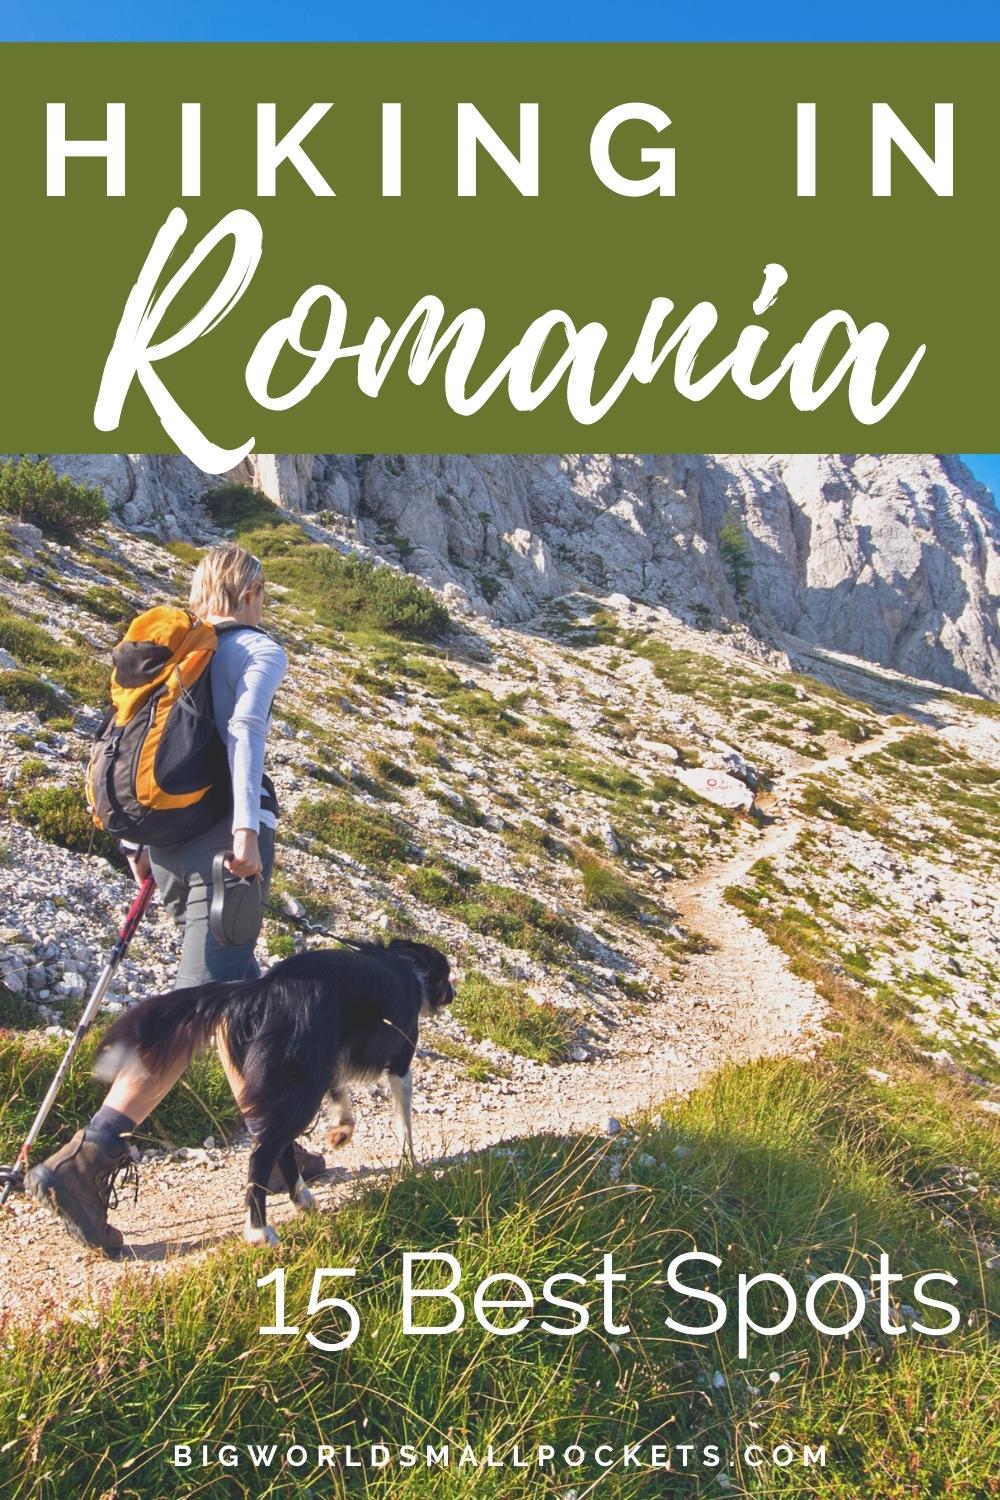 Hiking in Romania: 15 Best Spots